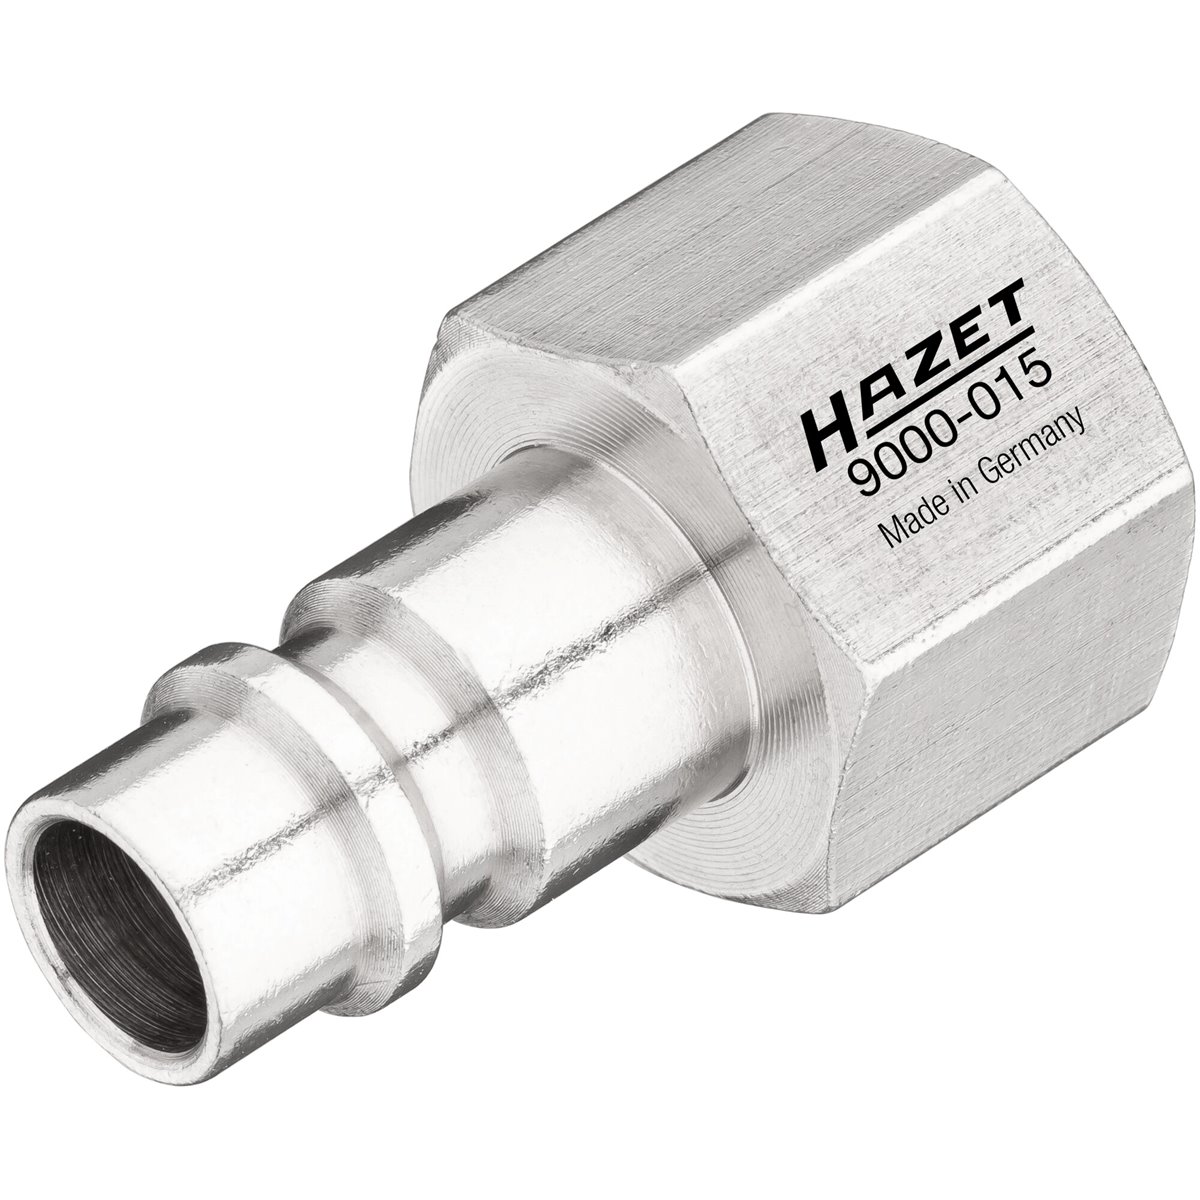 Hazet 9000-015 Luftanschluss-Nippel (bspw. zum Anschluss von Schlauchaufrollern)